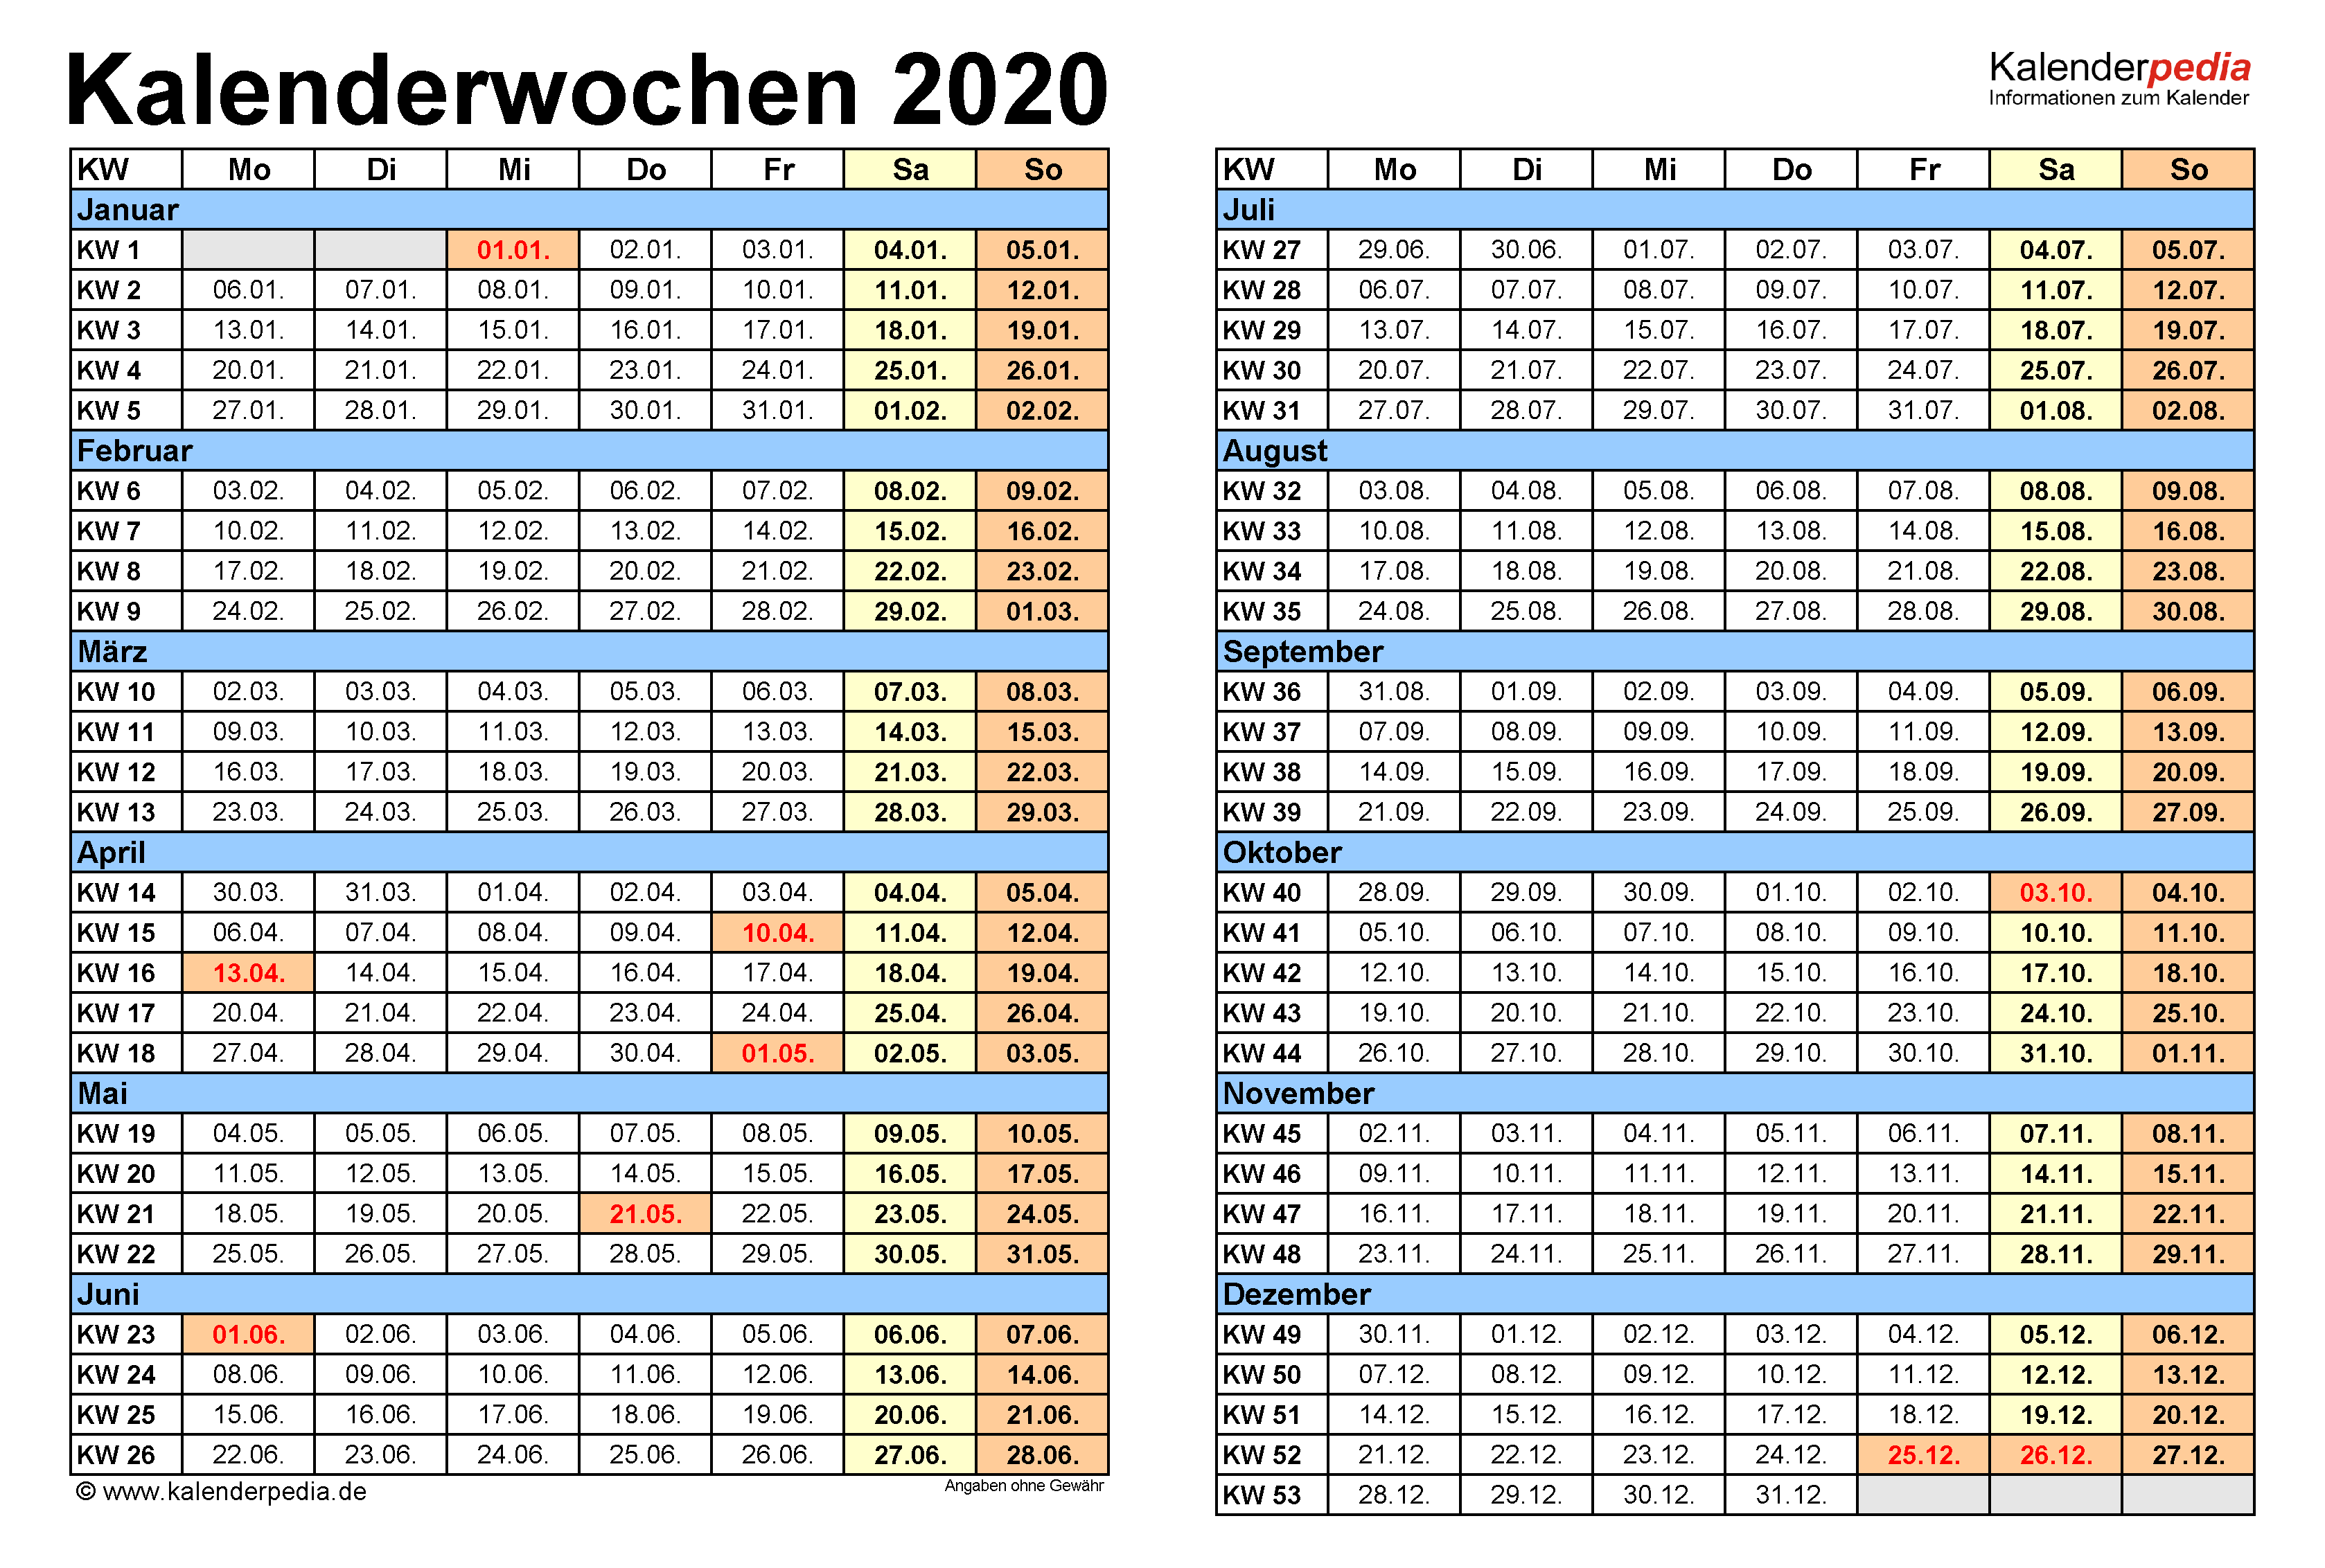 29 kalenderwoche 2020 | Alle Kalenderwochen (KW) 2020